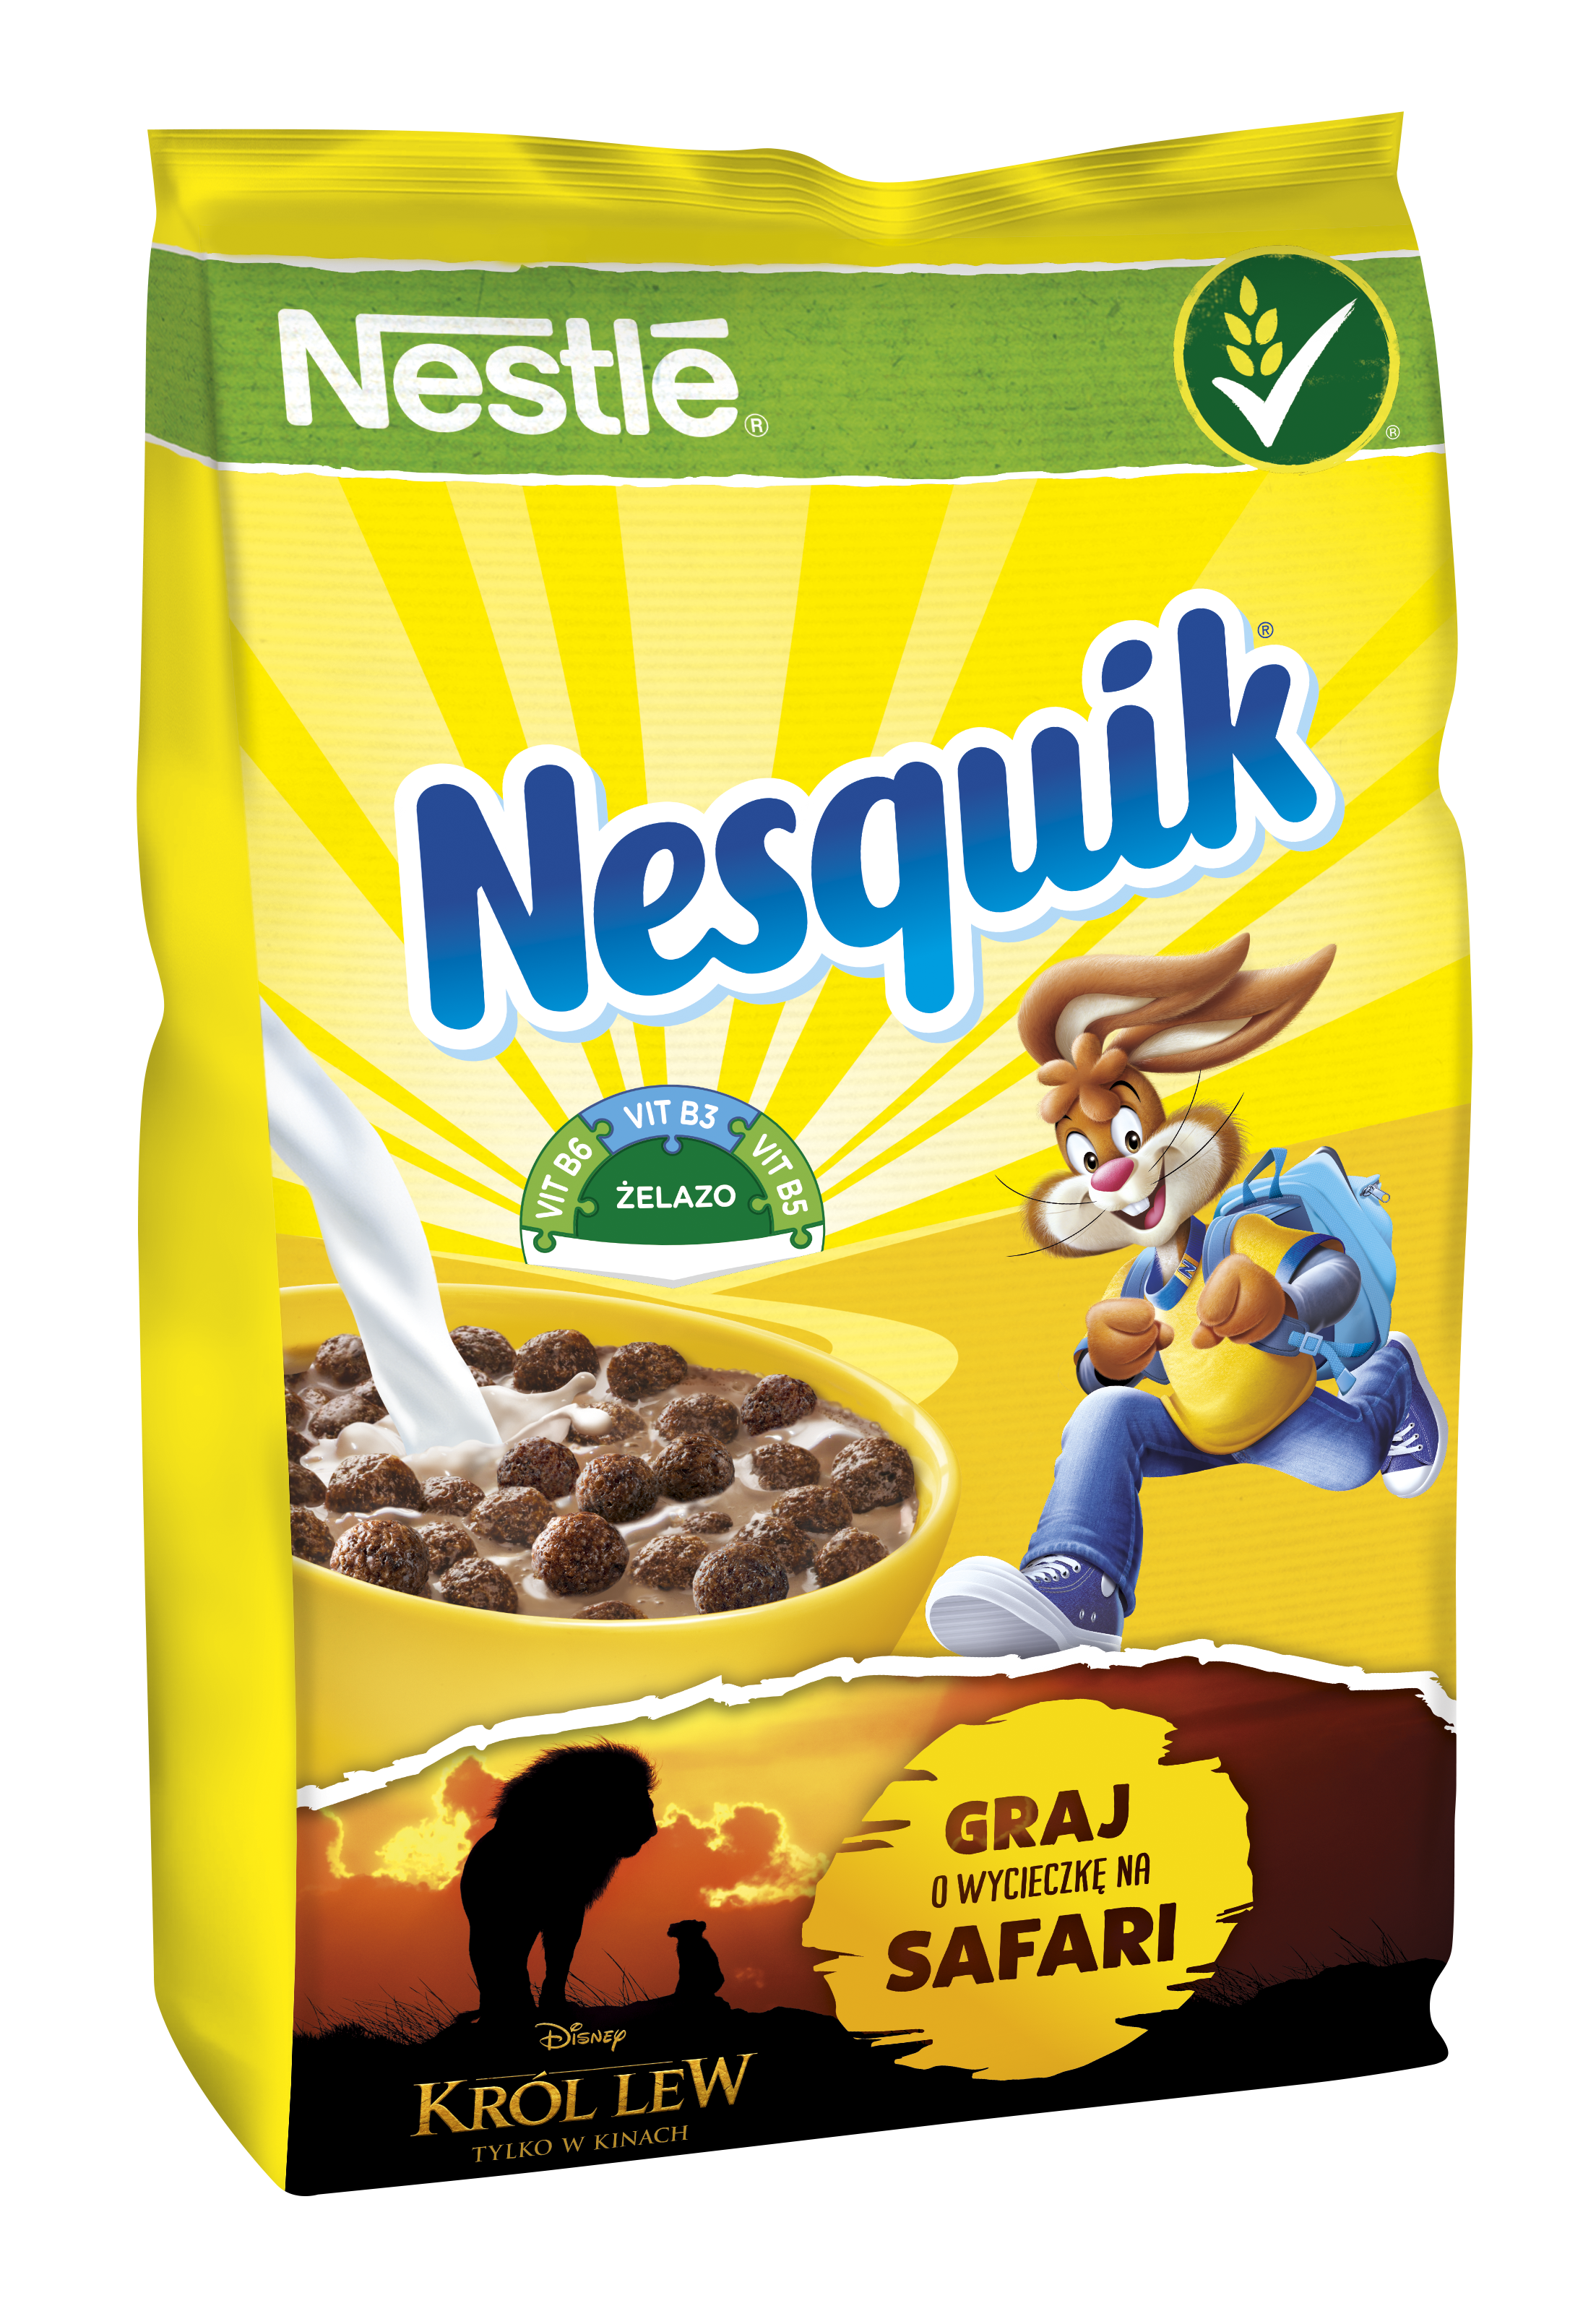 Loteria płatków śniadaniowych Nestlé